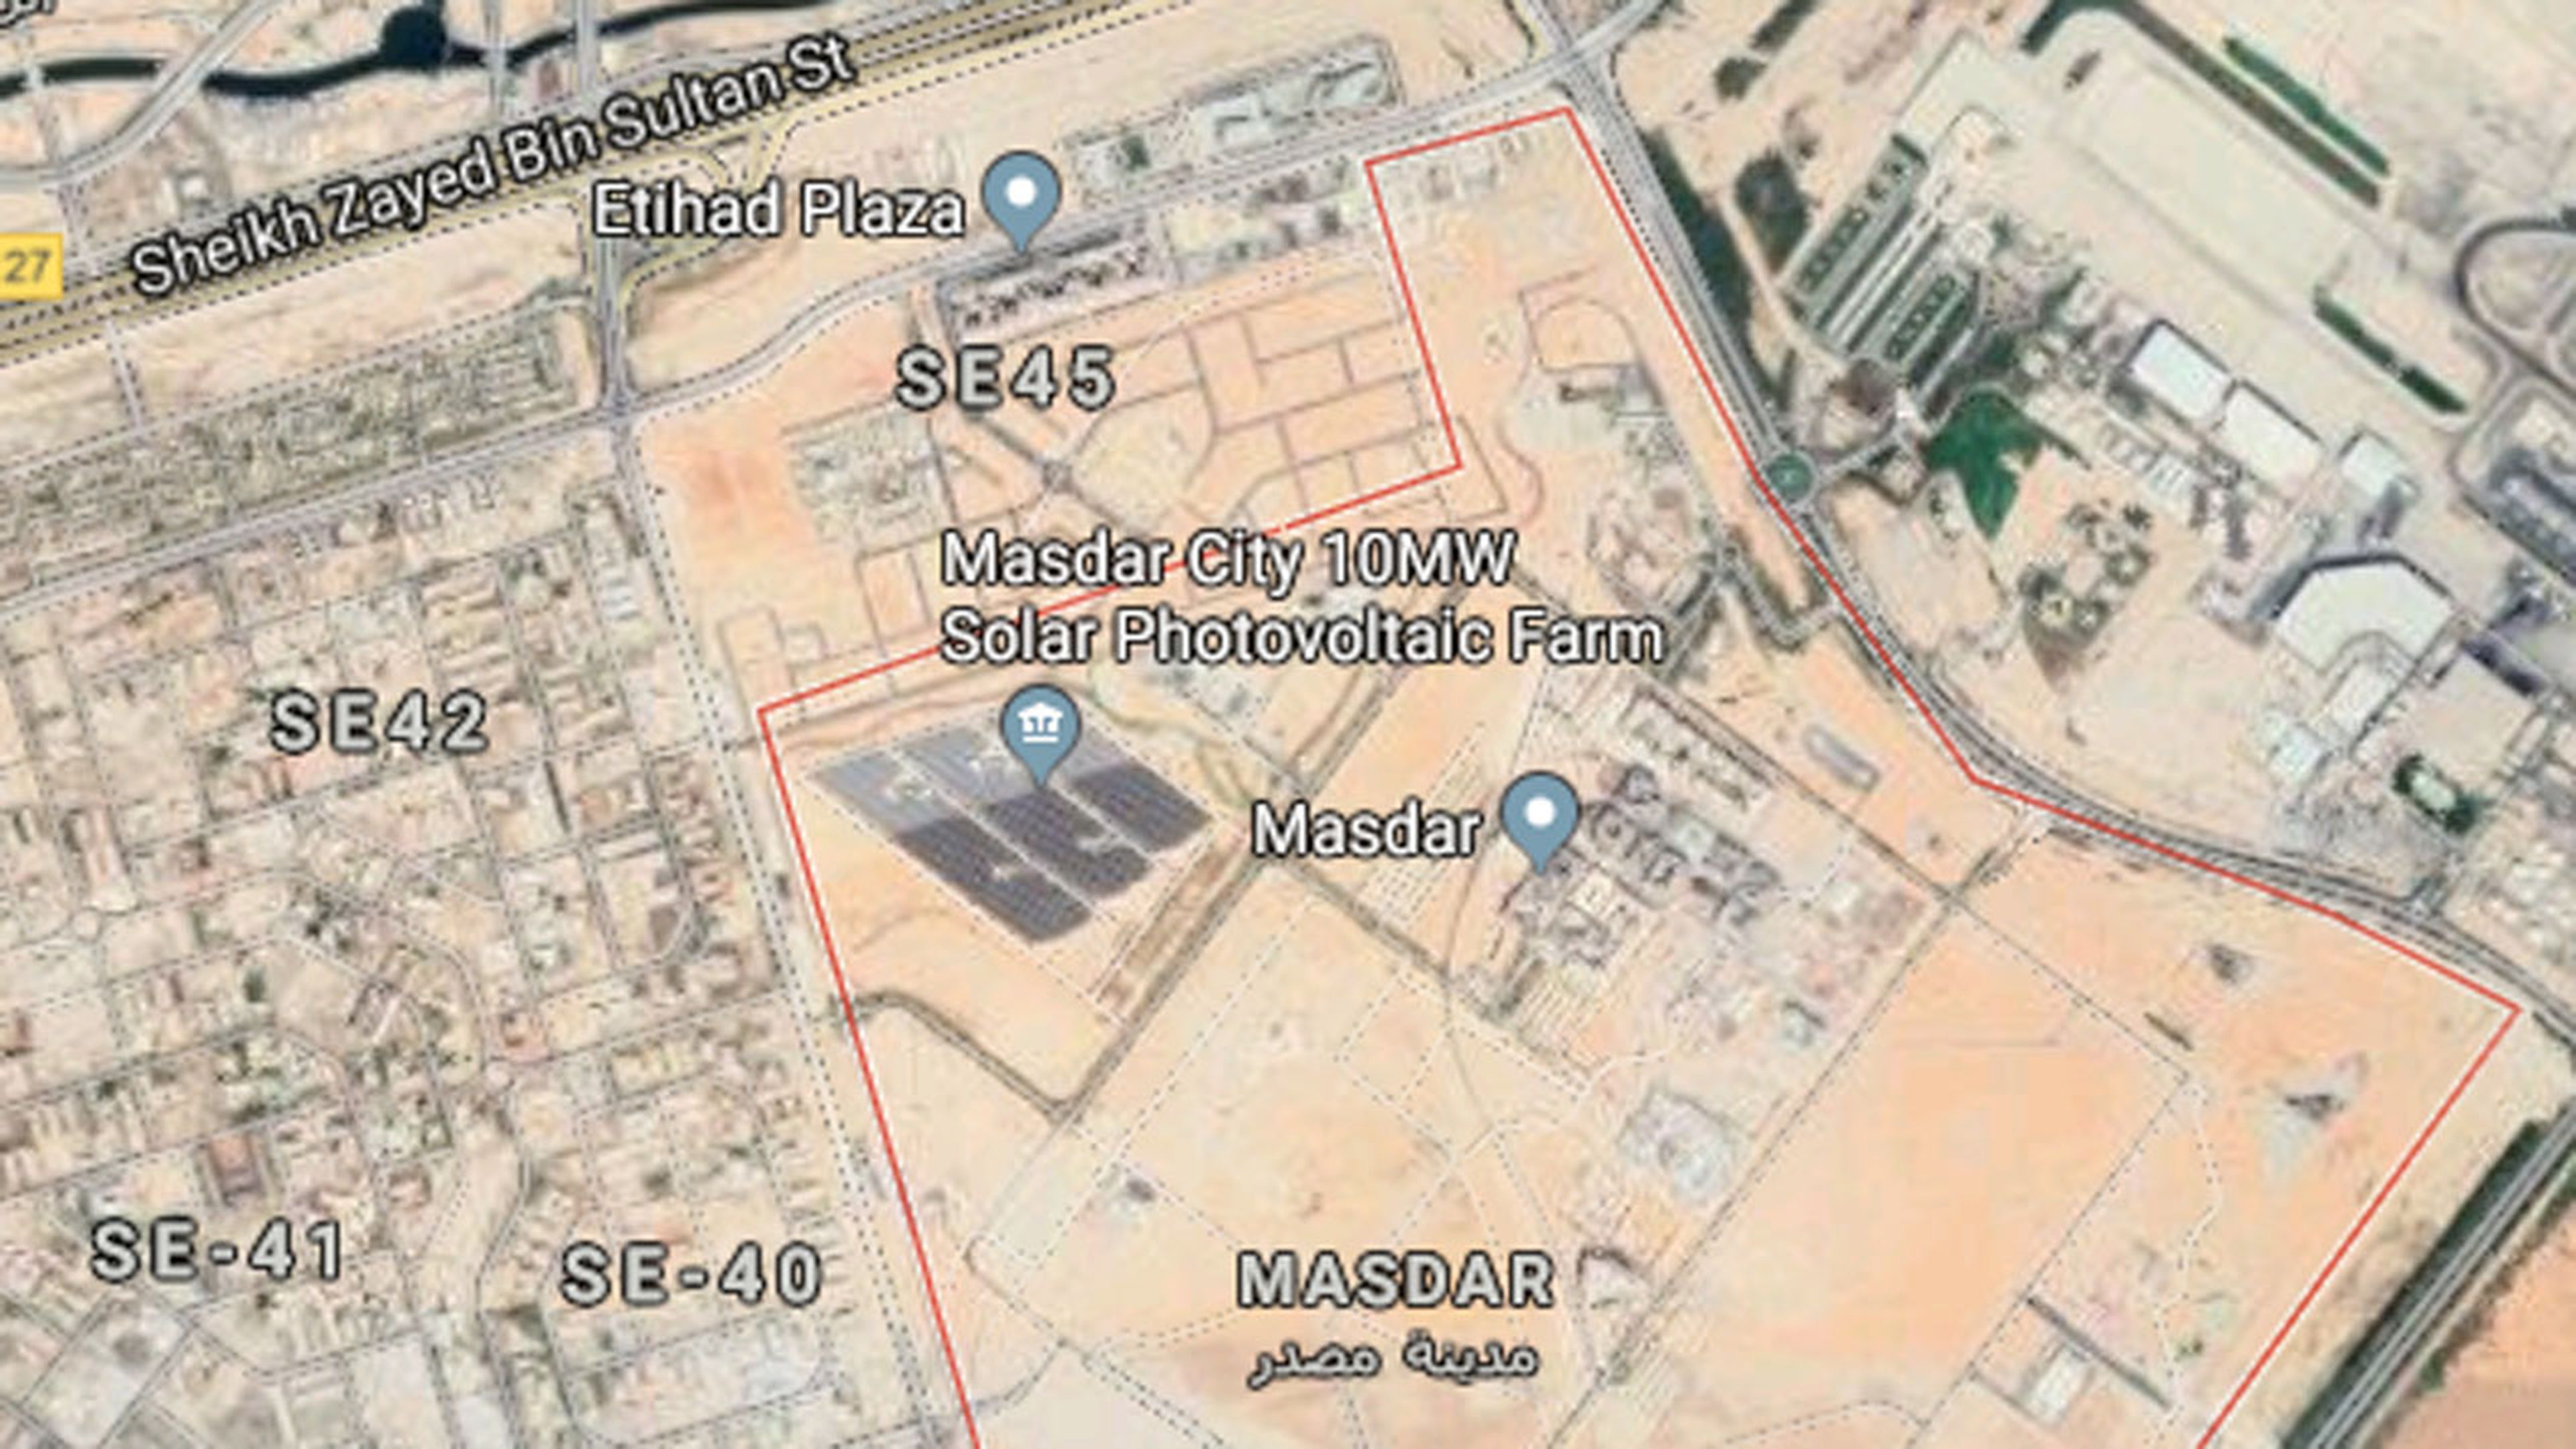 Vista área de Masdar City a través de Google Maps